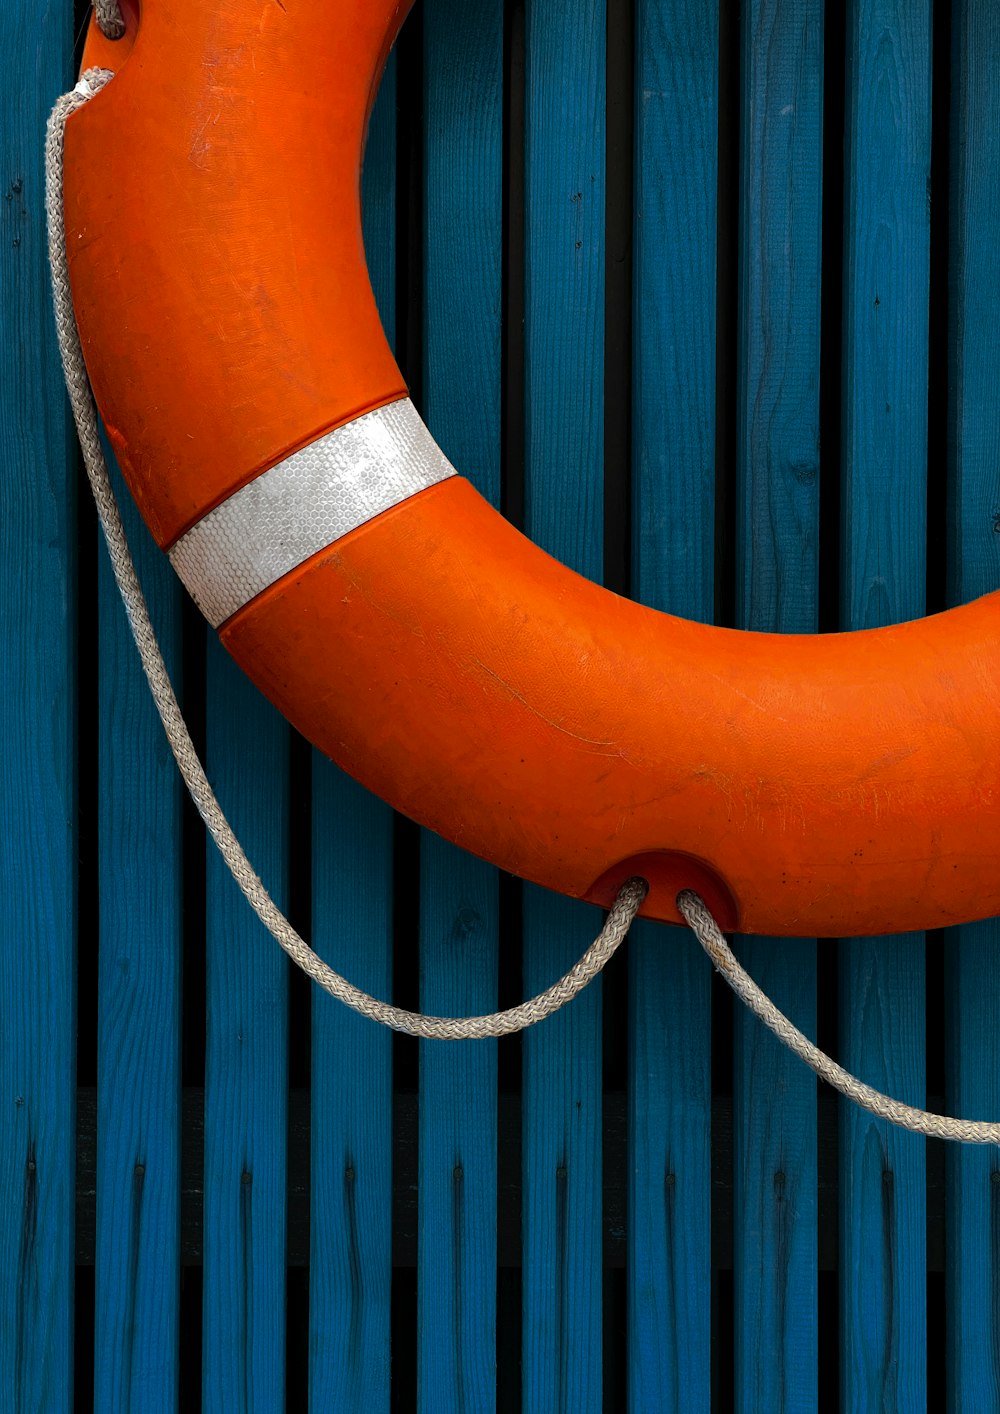 orange and black life buoy on blue wooden fence